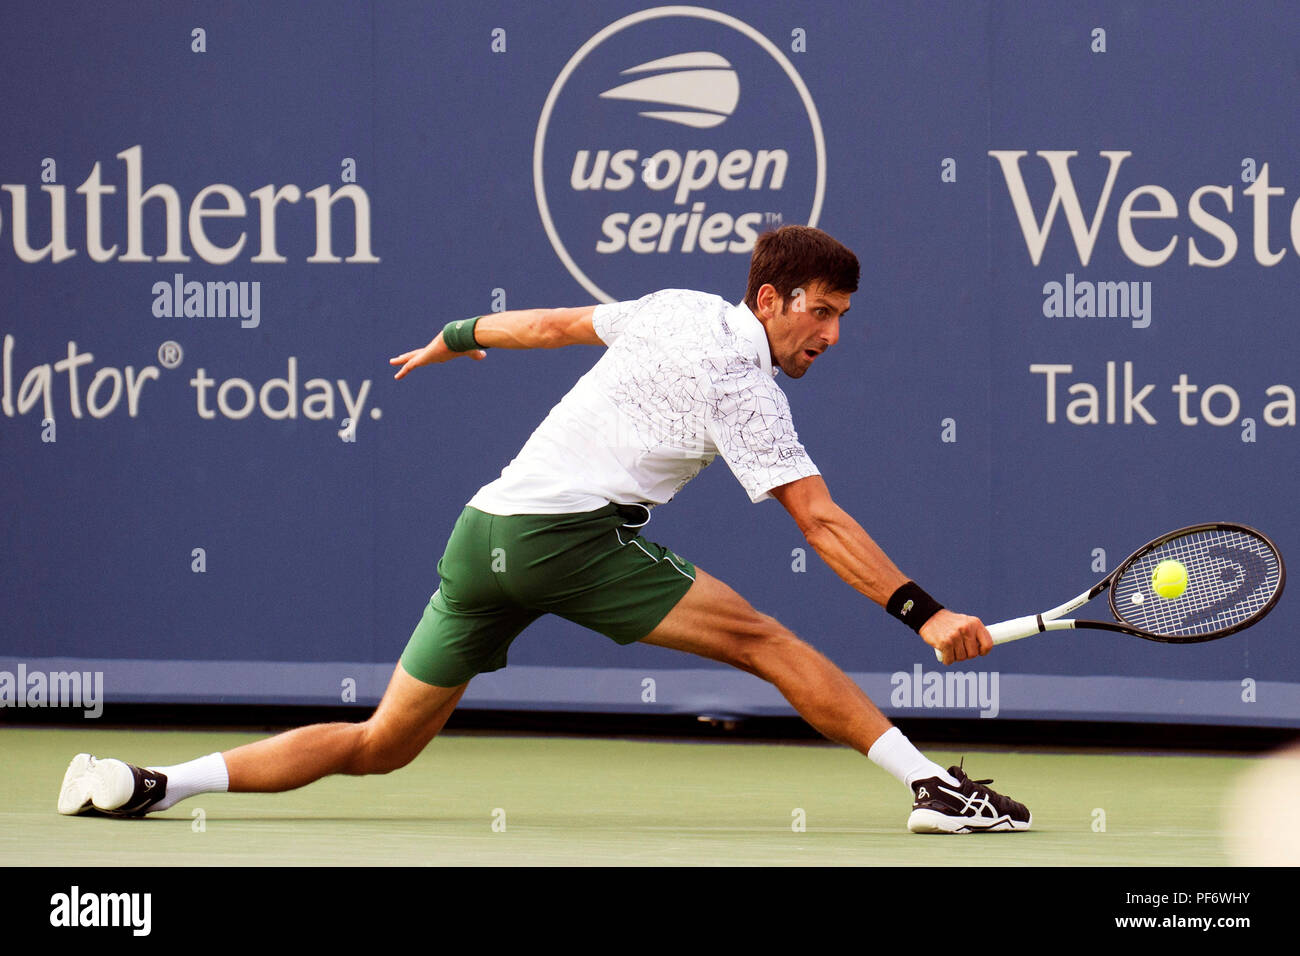 Mason, Ohio, USA. August 19, 2018: Novak Djokovic (SRB) schlägt den Ball zurück zu Roger Federer (SUI) am westlichen Süden öffnen, Mason, Ohio, USA. Brent Clark/Alamy leben Nachrichten Stockfoto